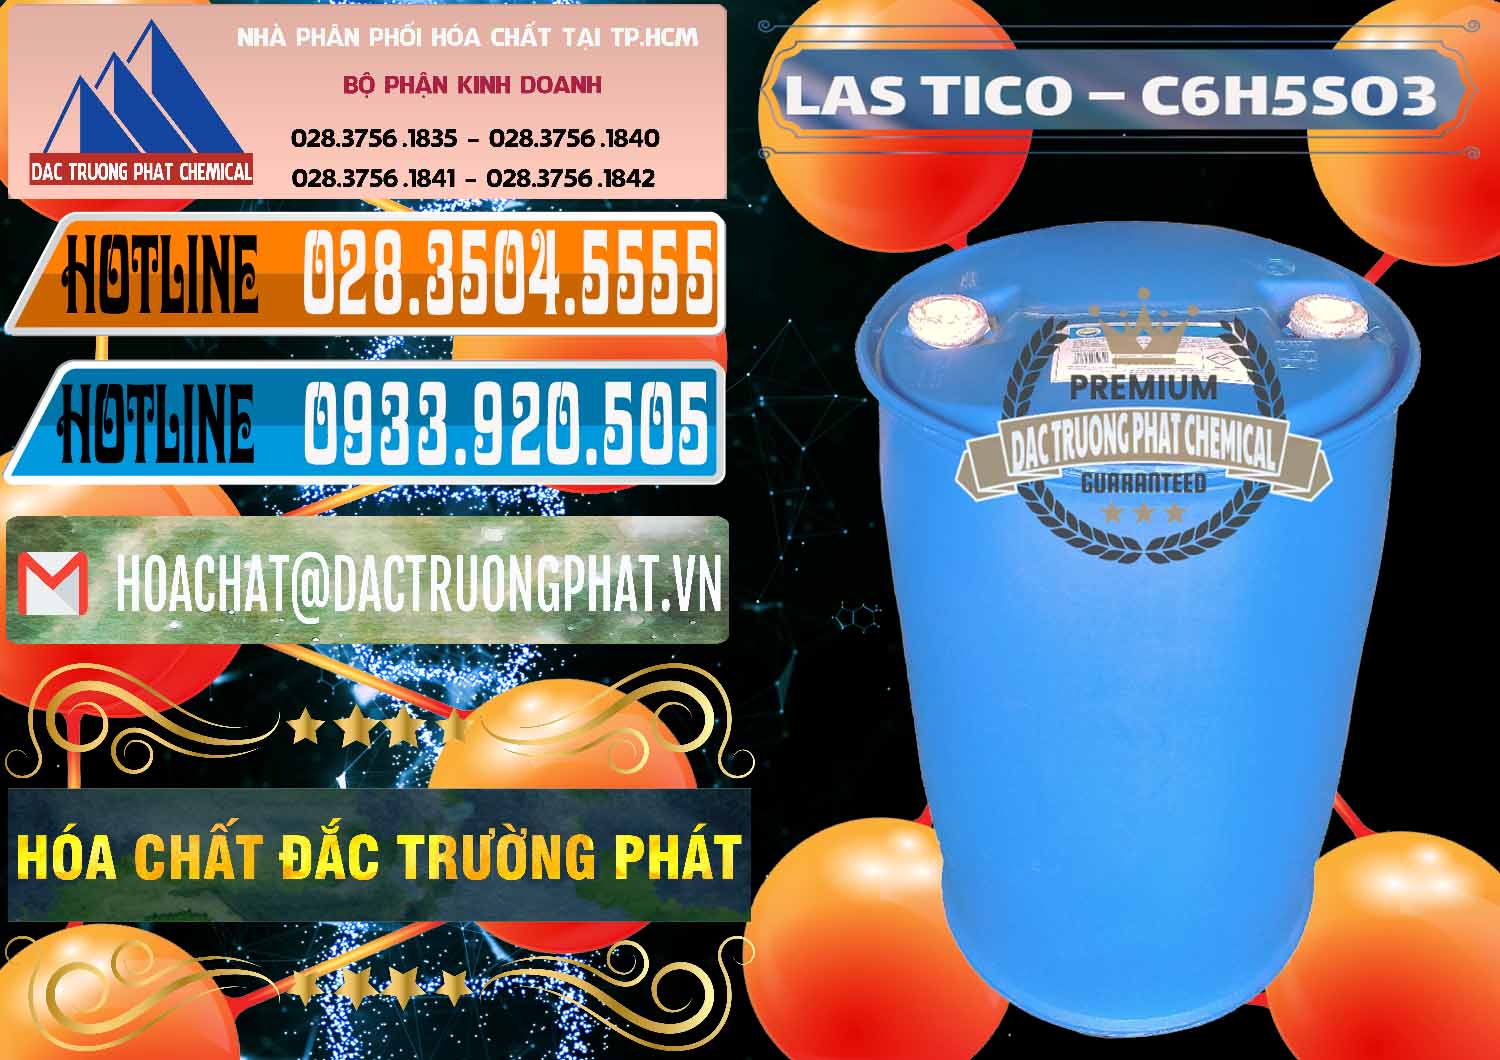 Đơn vị chuyên cung cấp và bán Chất tạo bọt Las H Tico Việt Nam - 0190 - Nhà cung cấp - phân phối hóa chất tại TP.HCM - stmp.net